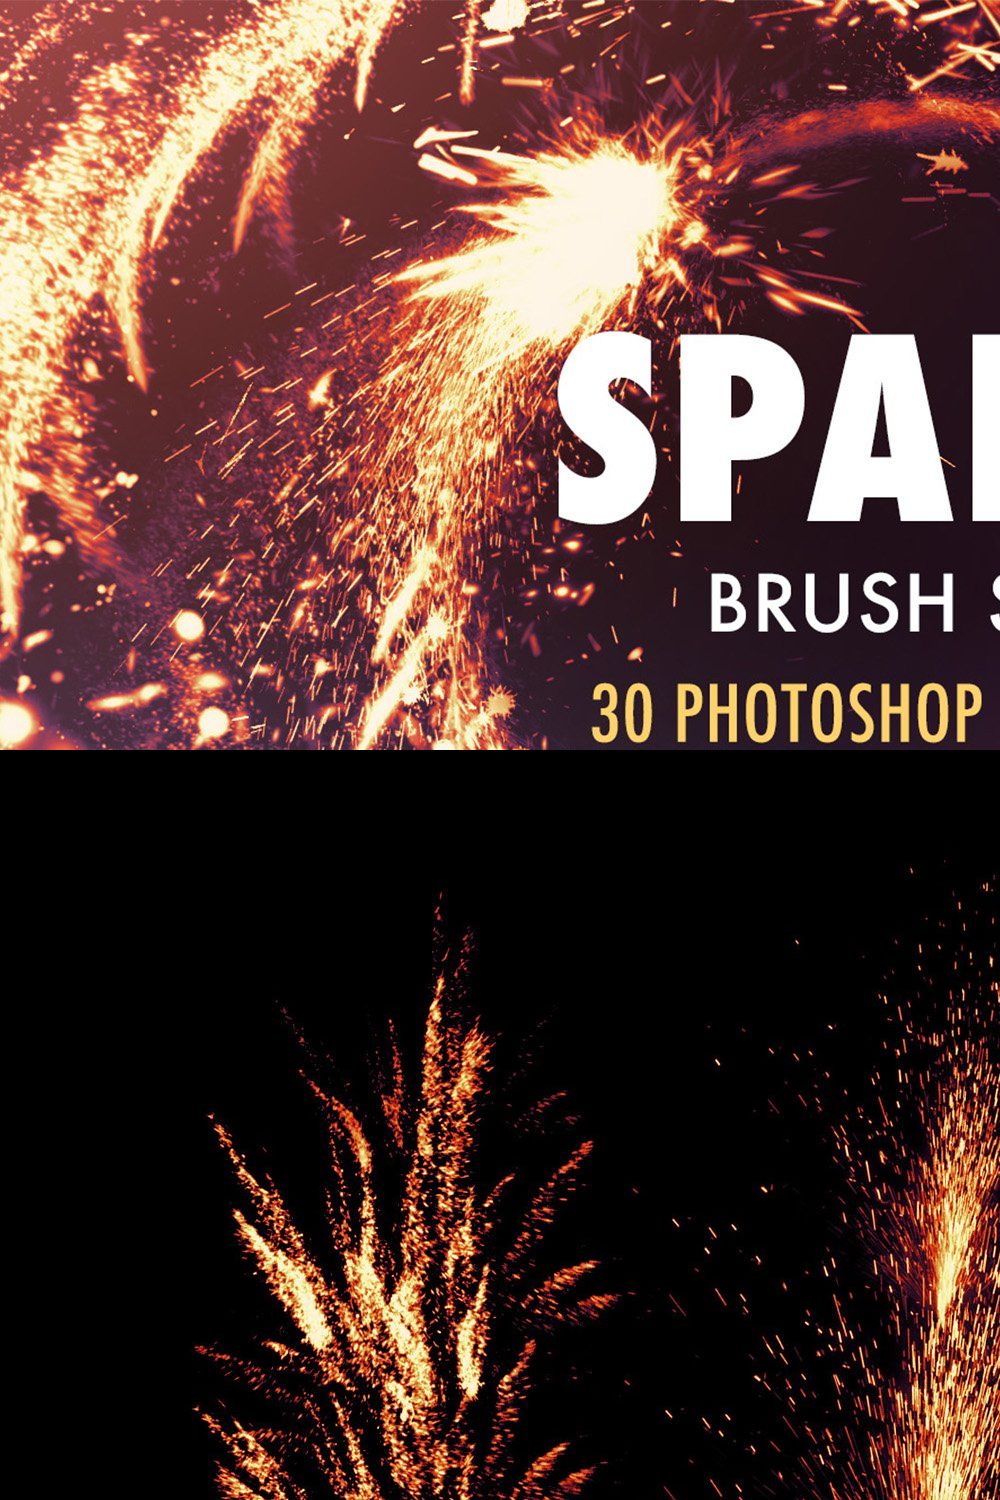 Spark Brush pack pinterest preview image.